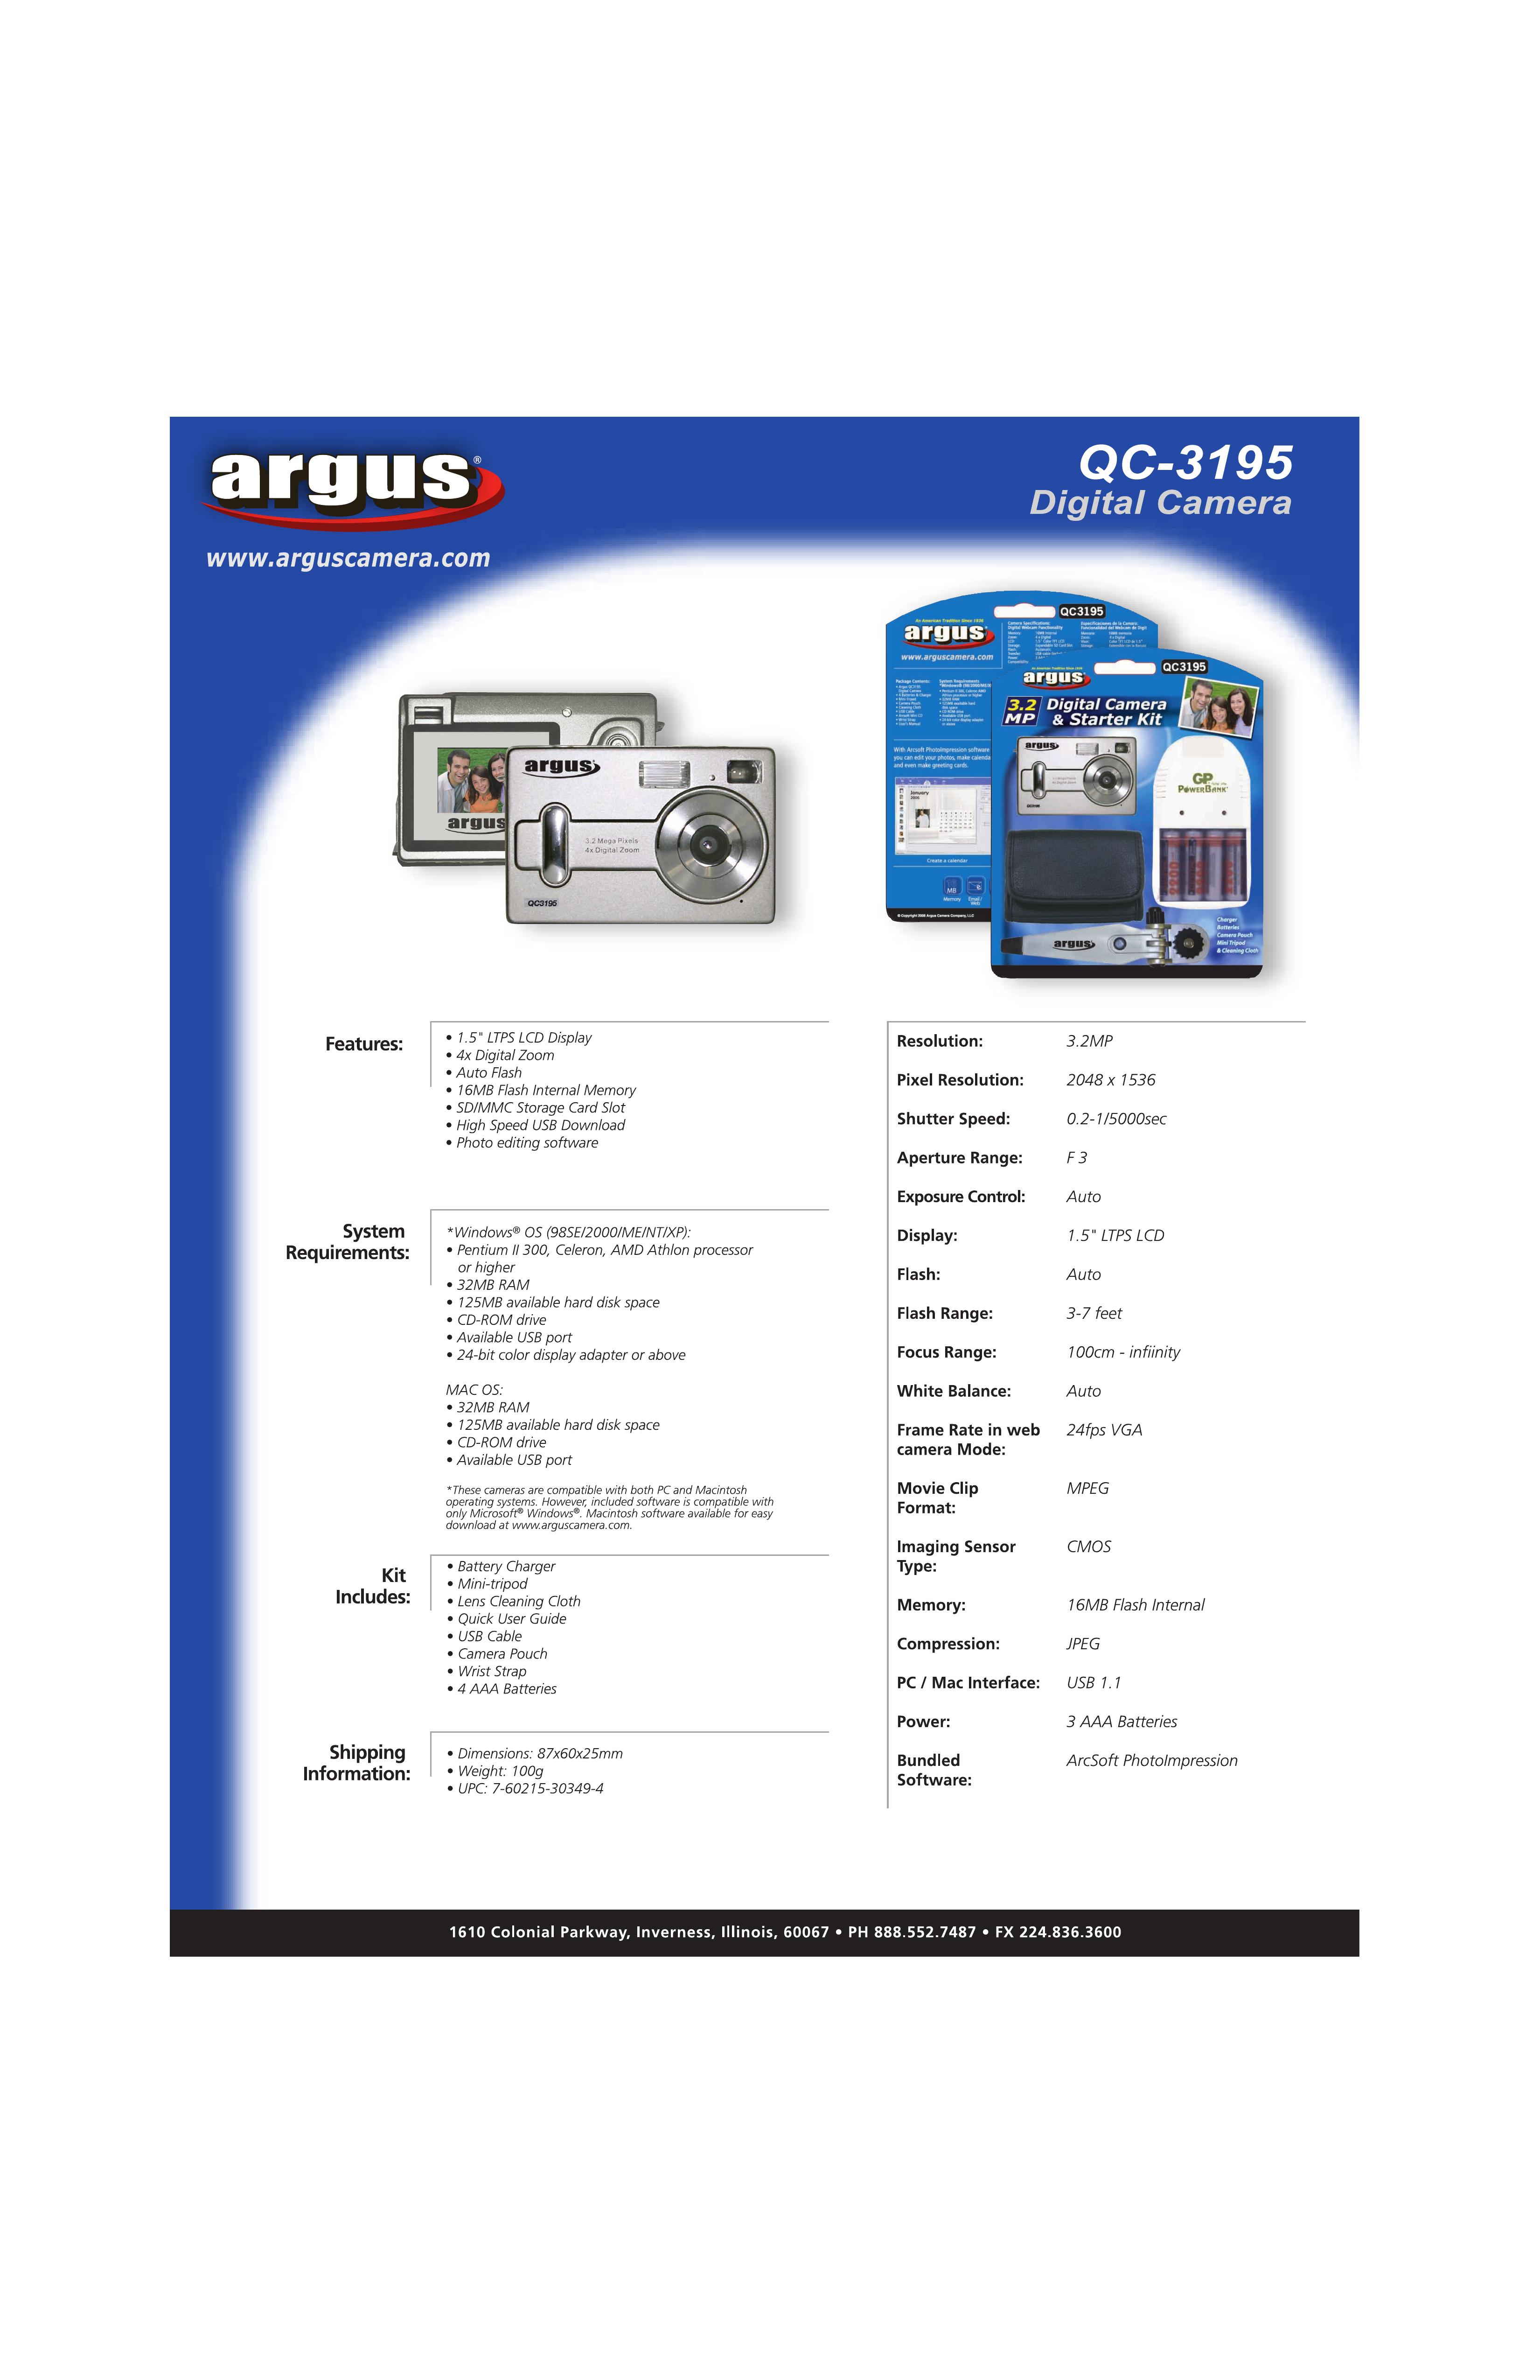 Argus Camera QC-3195 Digital Camera User Manual